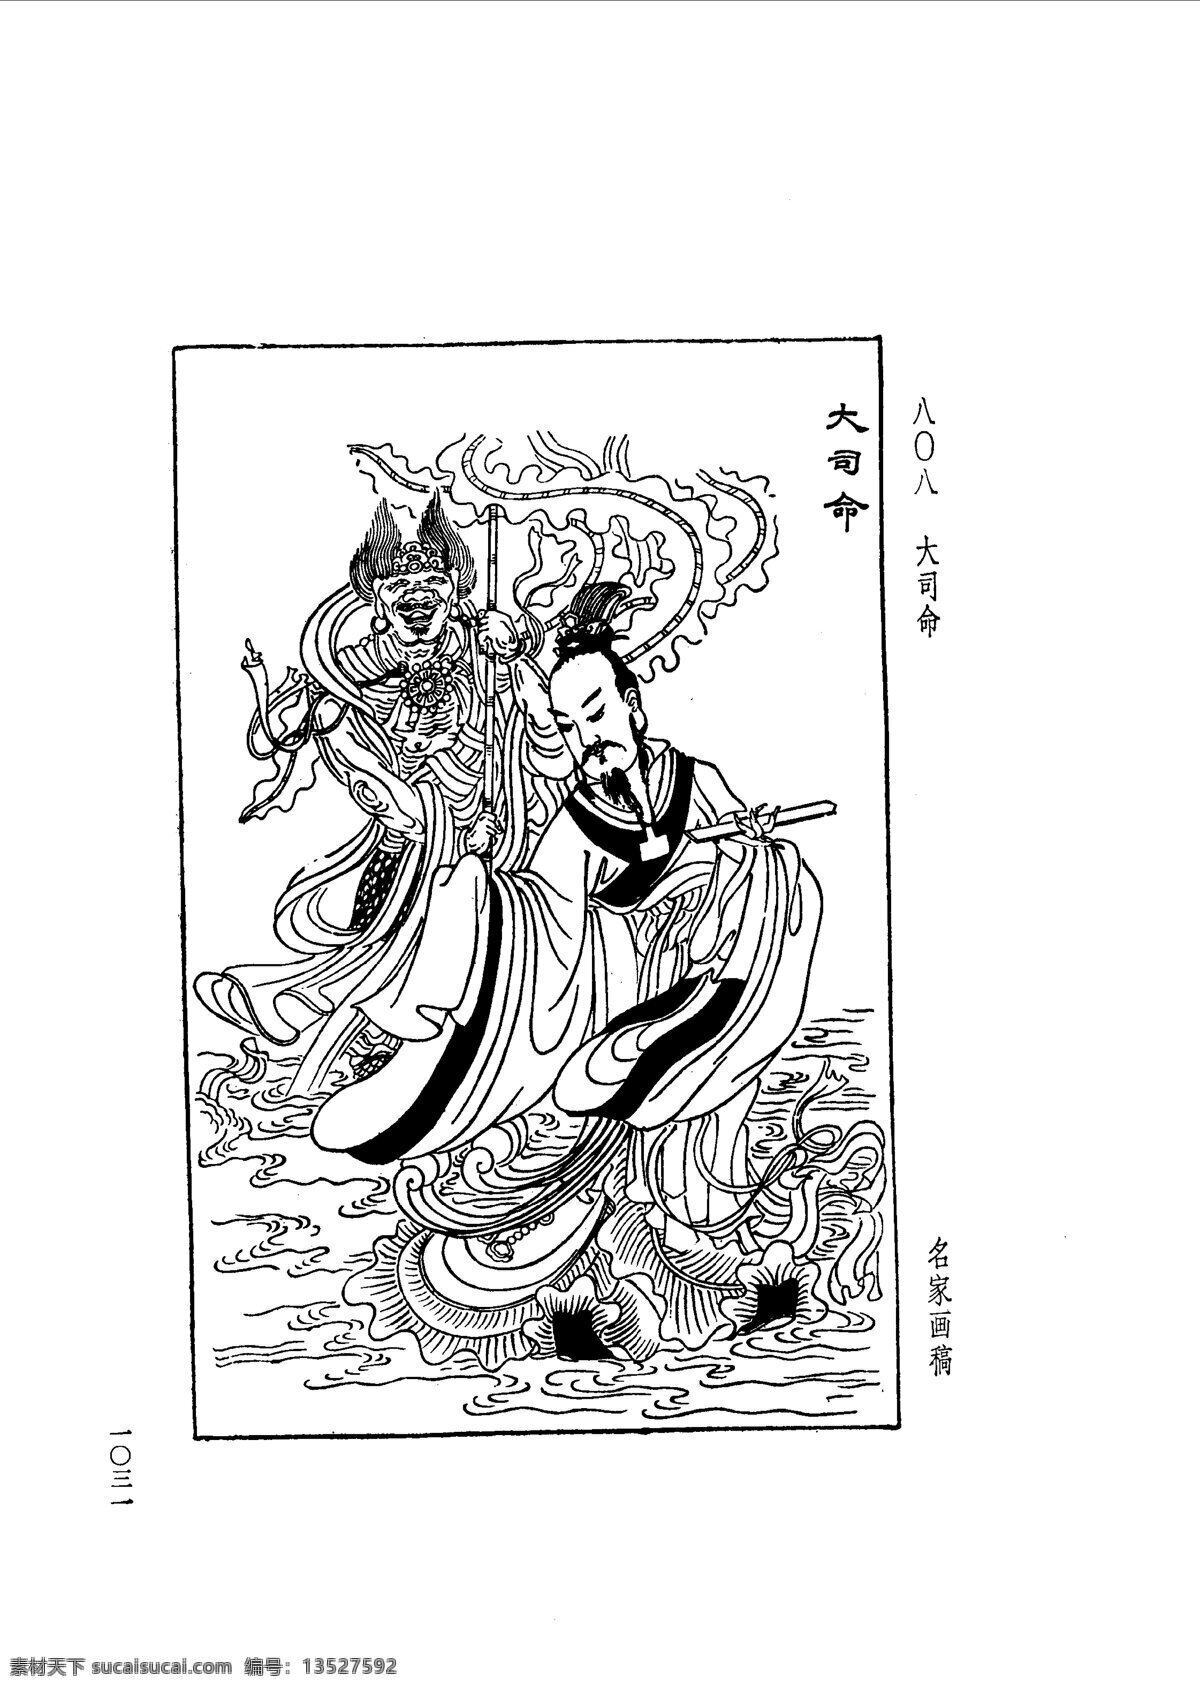 中国 古典文学 版画 选集 上 下册1059 设计素材 版画世界 书画美术 白色